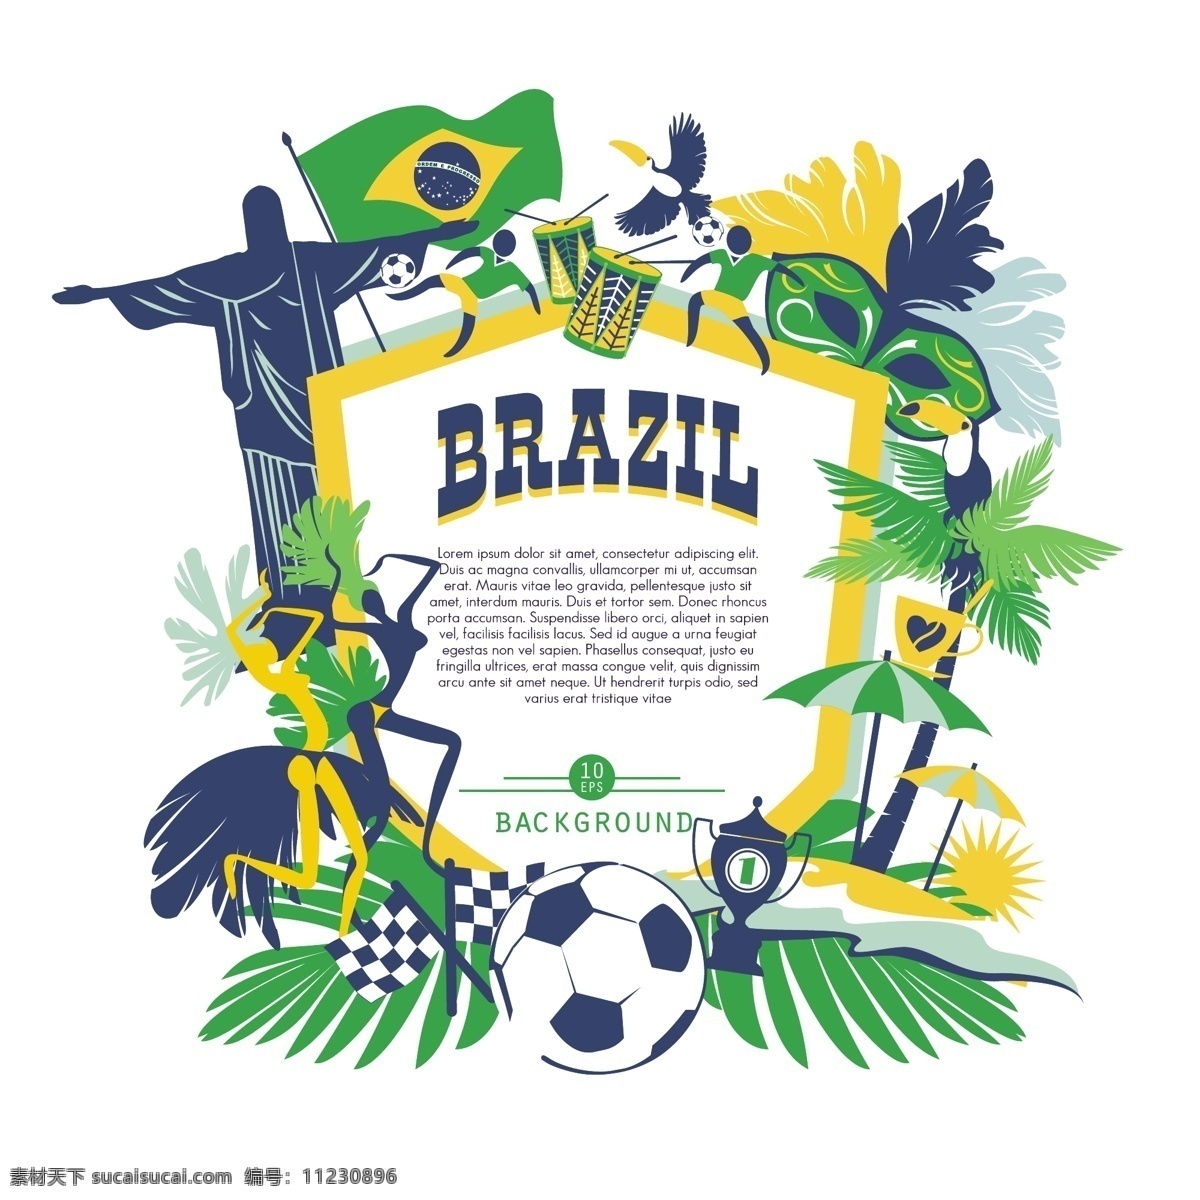 绿色 巴西 世界杯 海报 模板下载 足球 耶稣 椰子树 体育运动 生活百科 矢量素材 白色